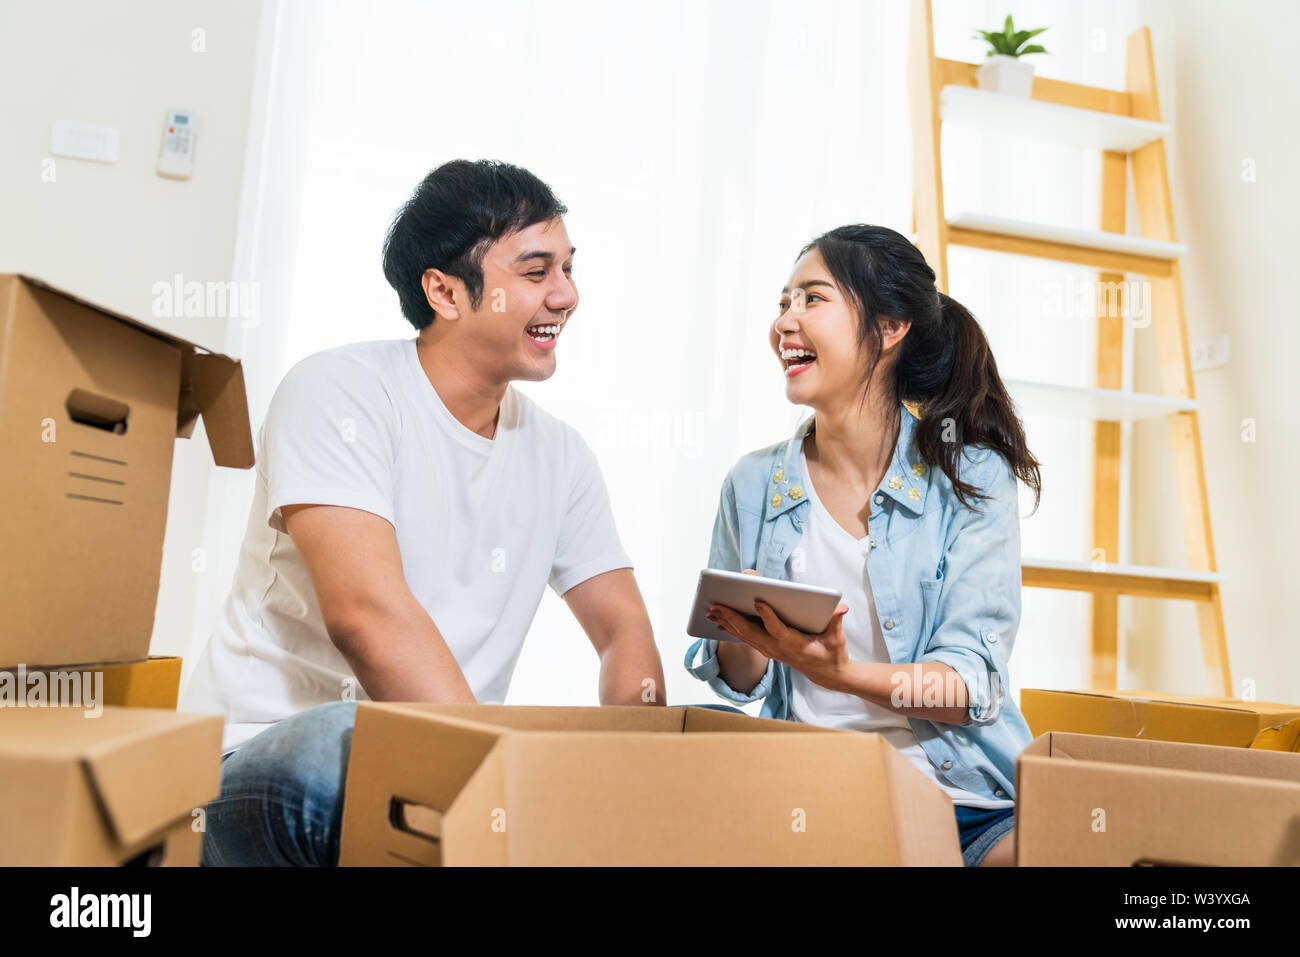 Glückliche junge asiatische Paar in Umzug in neues Haus, mit digitalen Tablet organisieren Dinge und auspacken Kästen zusammen. Home Umzug, das häusliche Leben Stockfoto